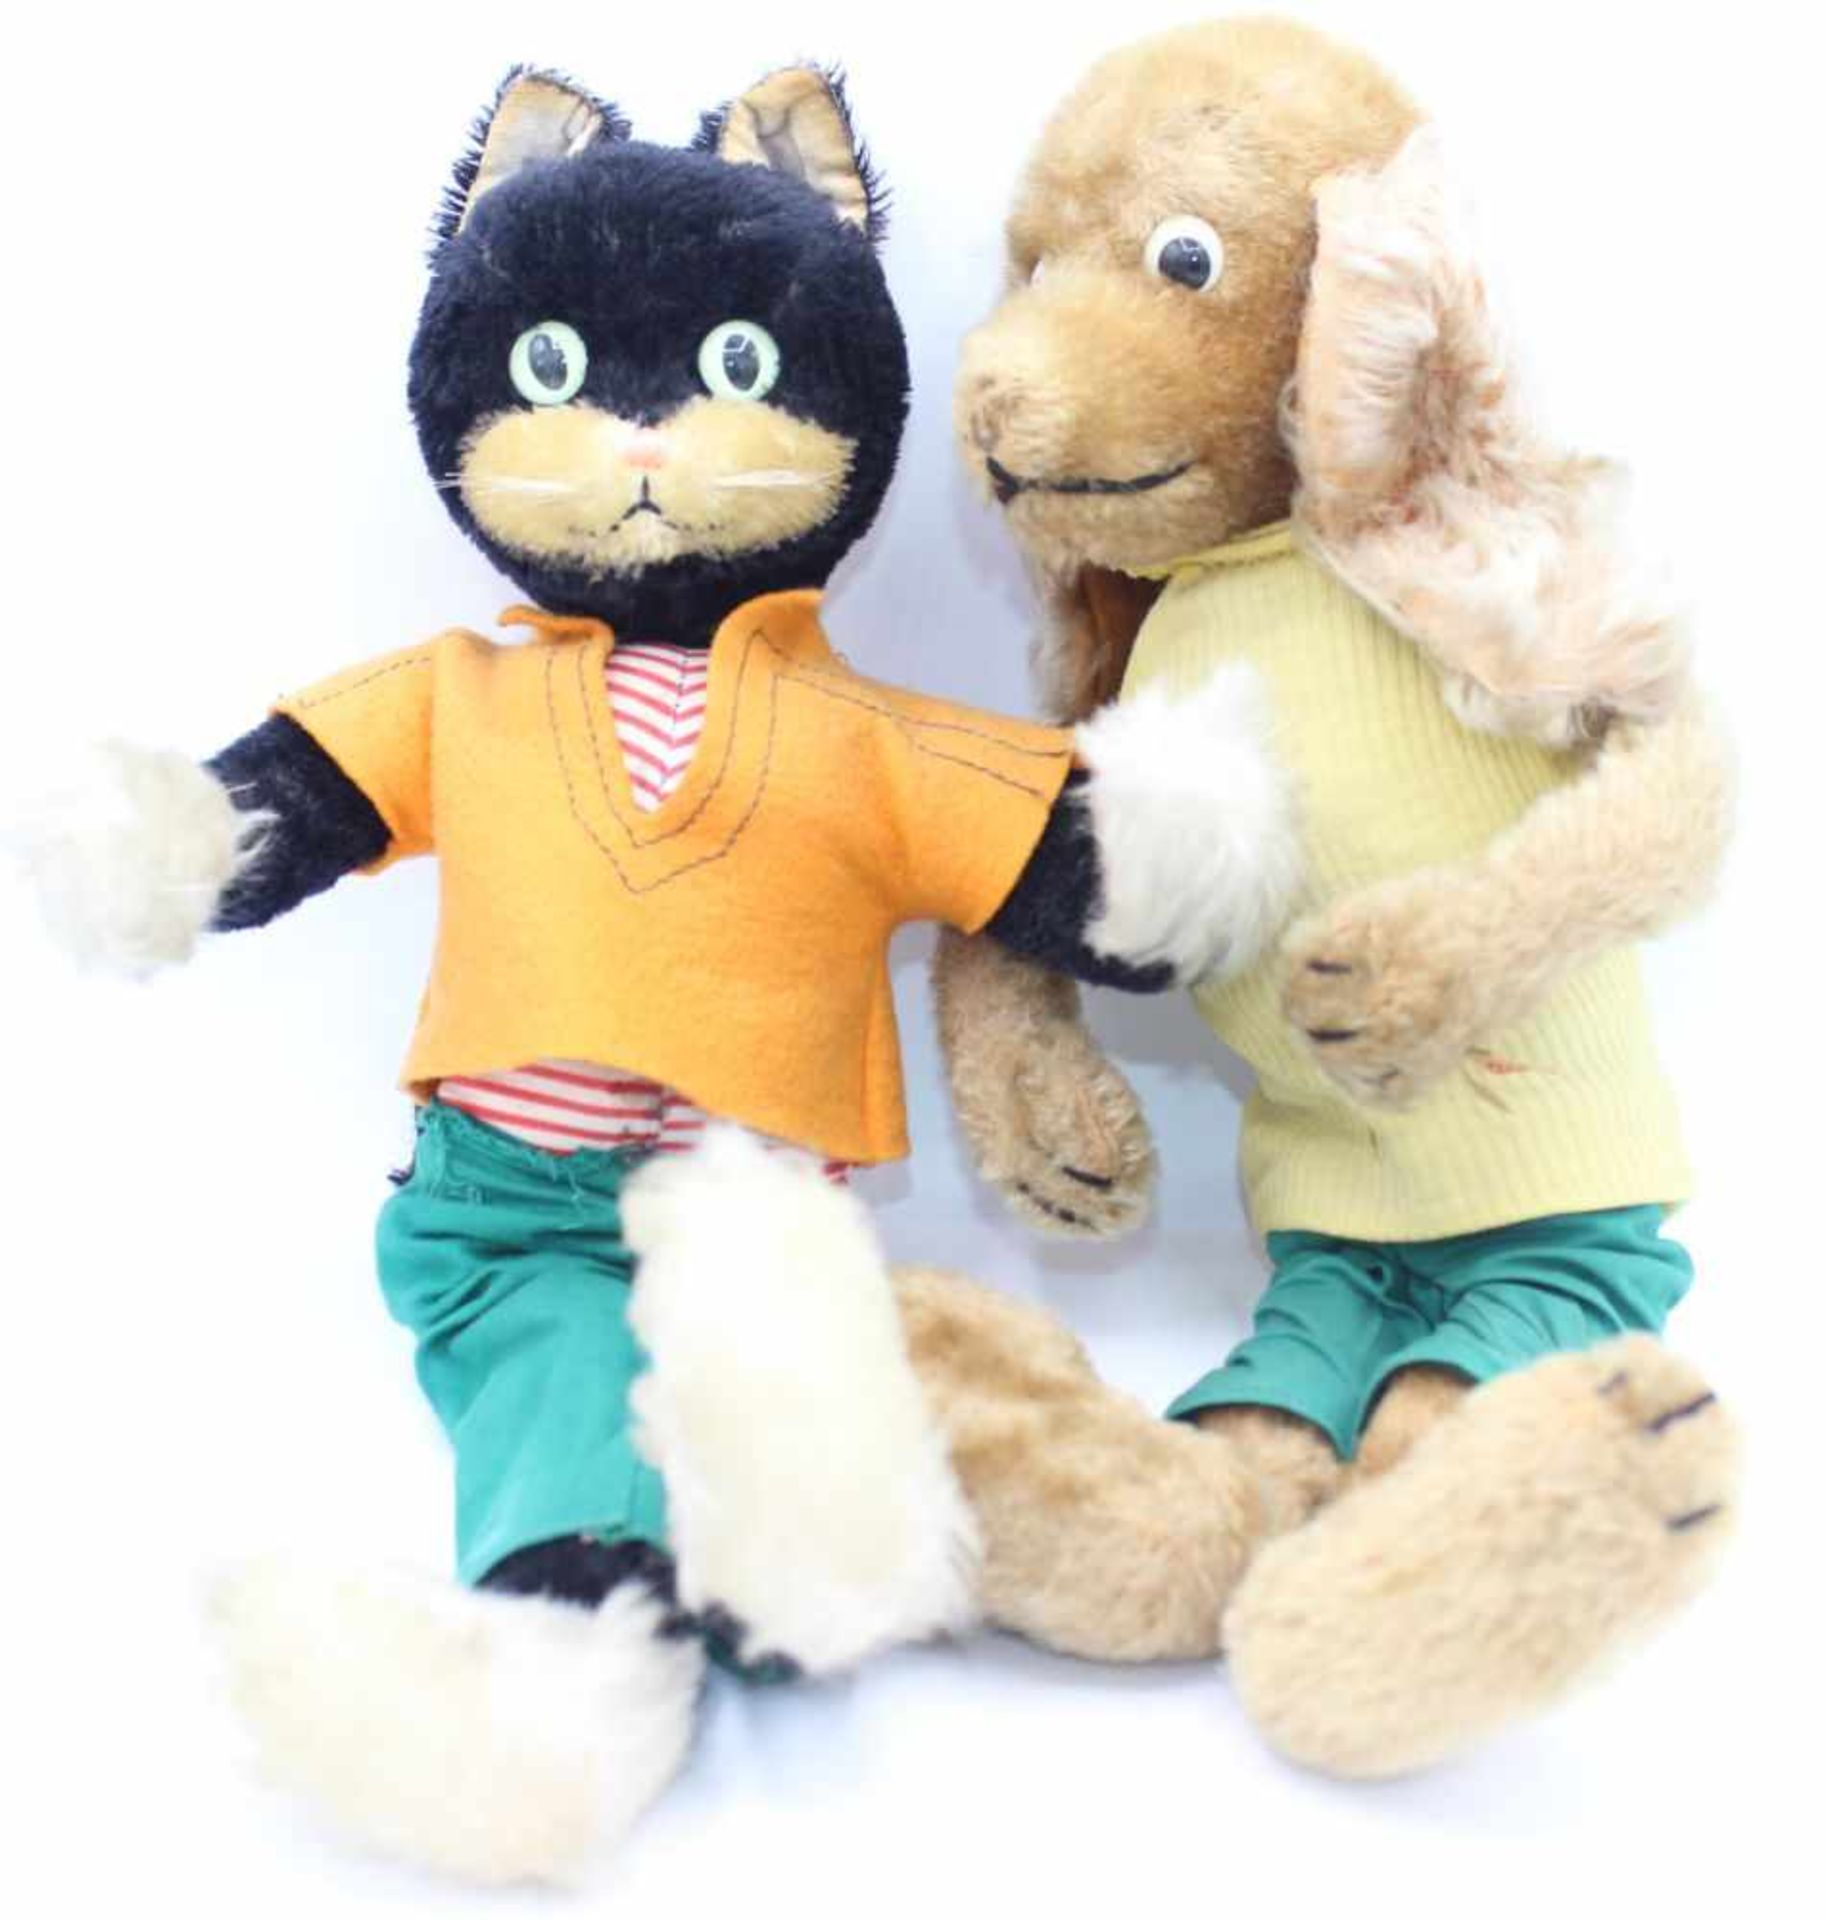 Spielzeug - Stofftiere "Hund und Katze", Marke Schuco, bespielt, 2 Stück, Länge ca. 38 cm